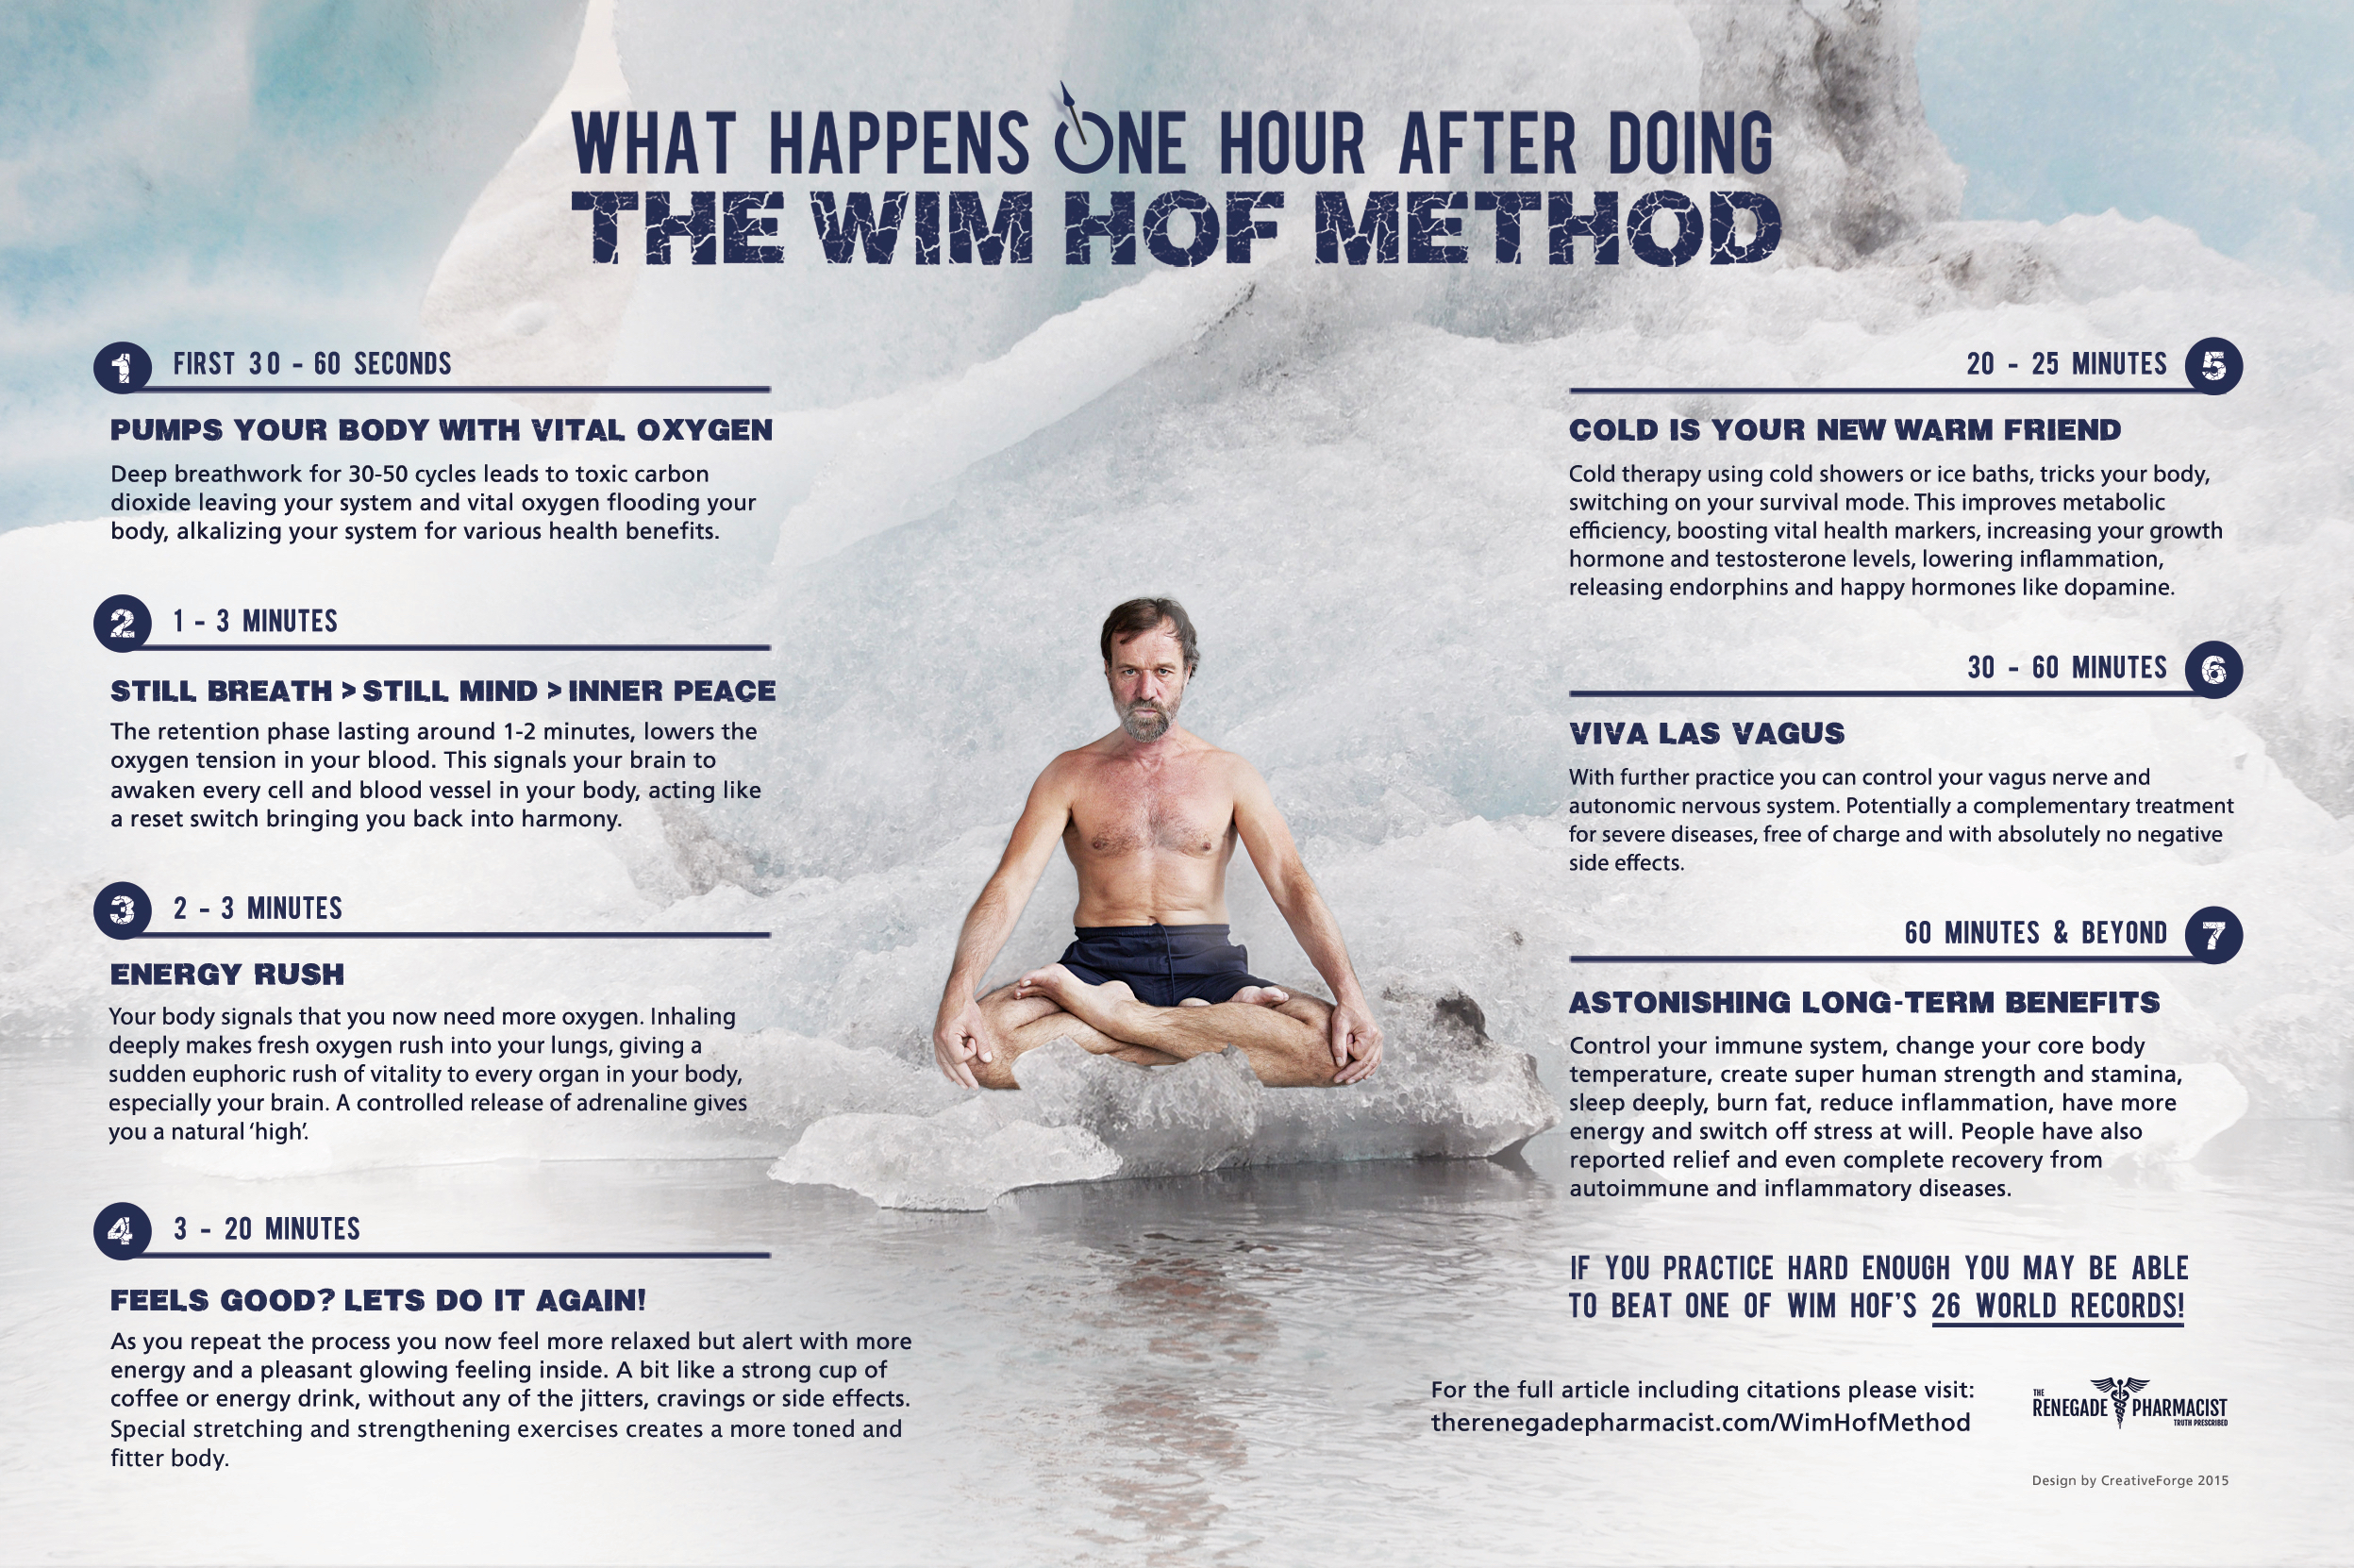 Does The Wim Hof Breathing Method Work?